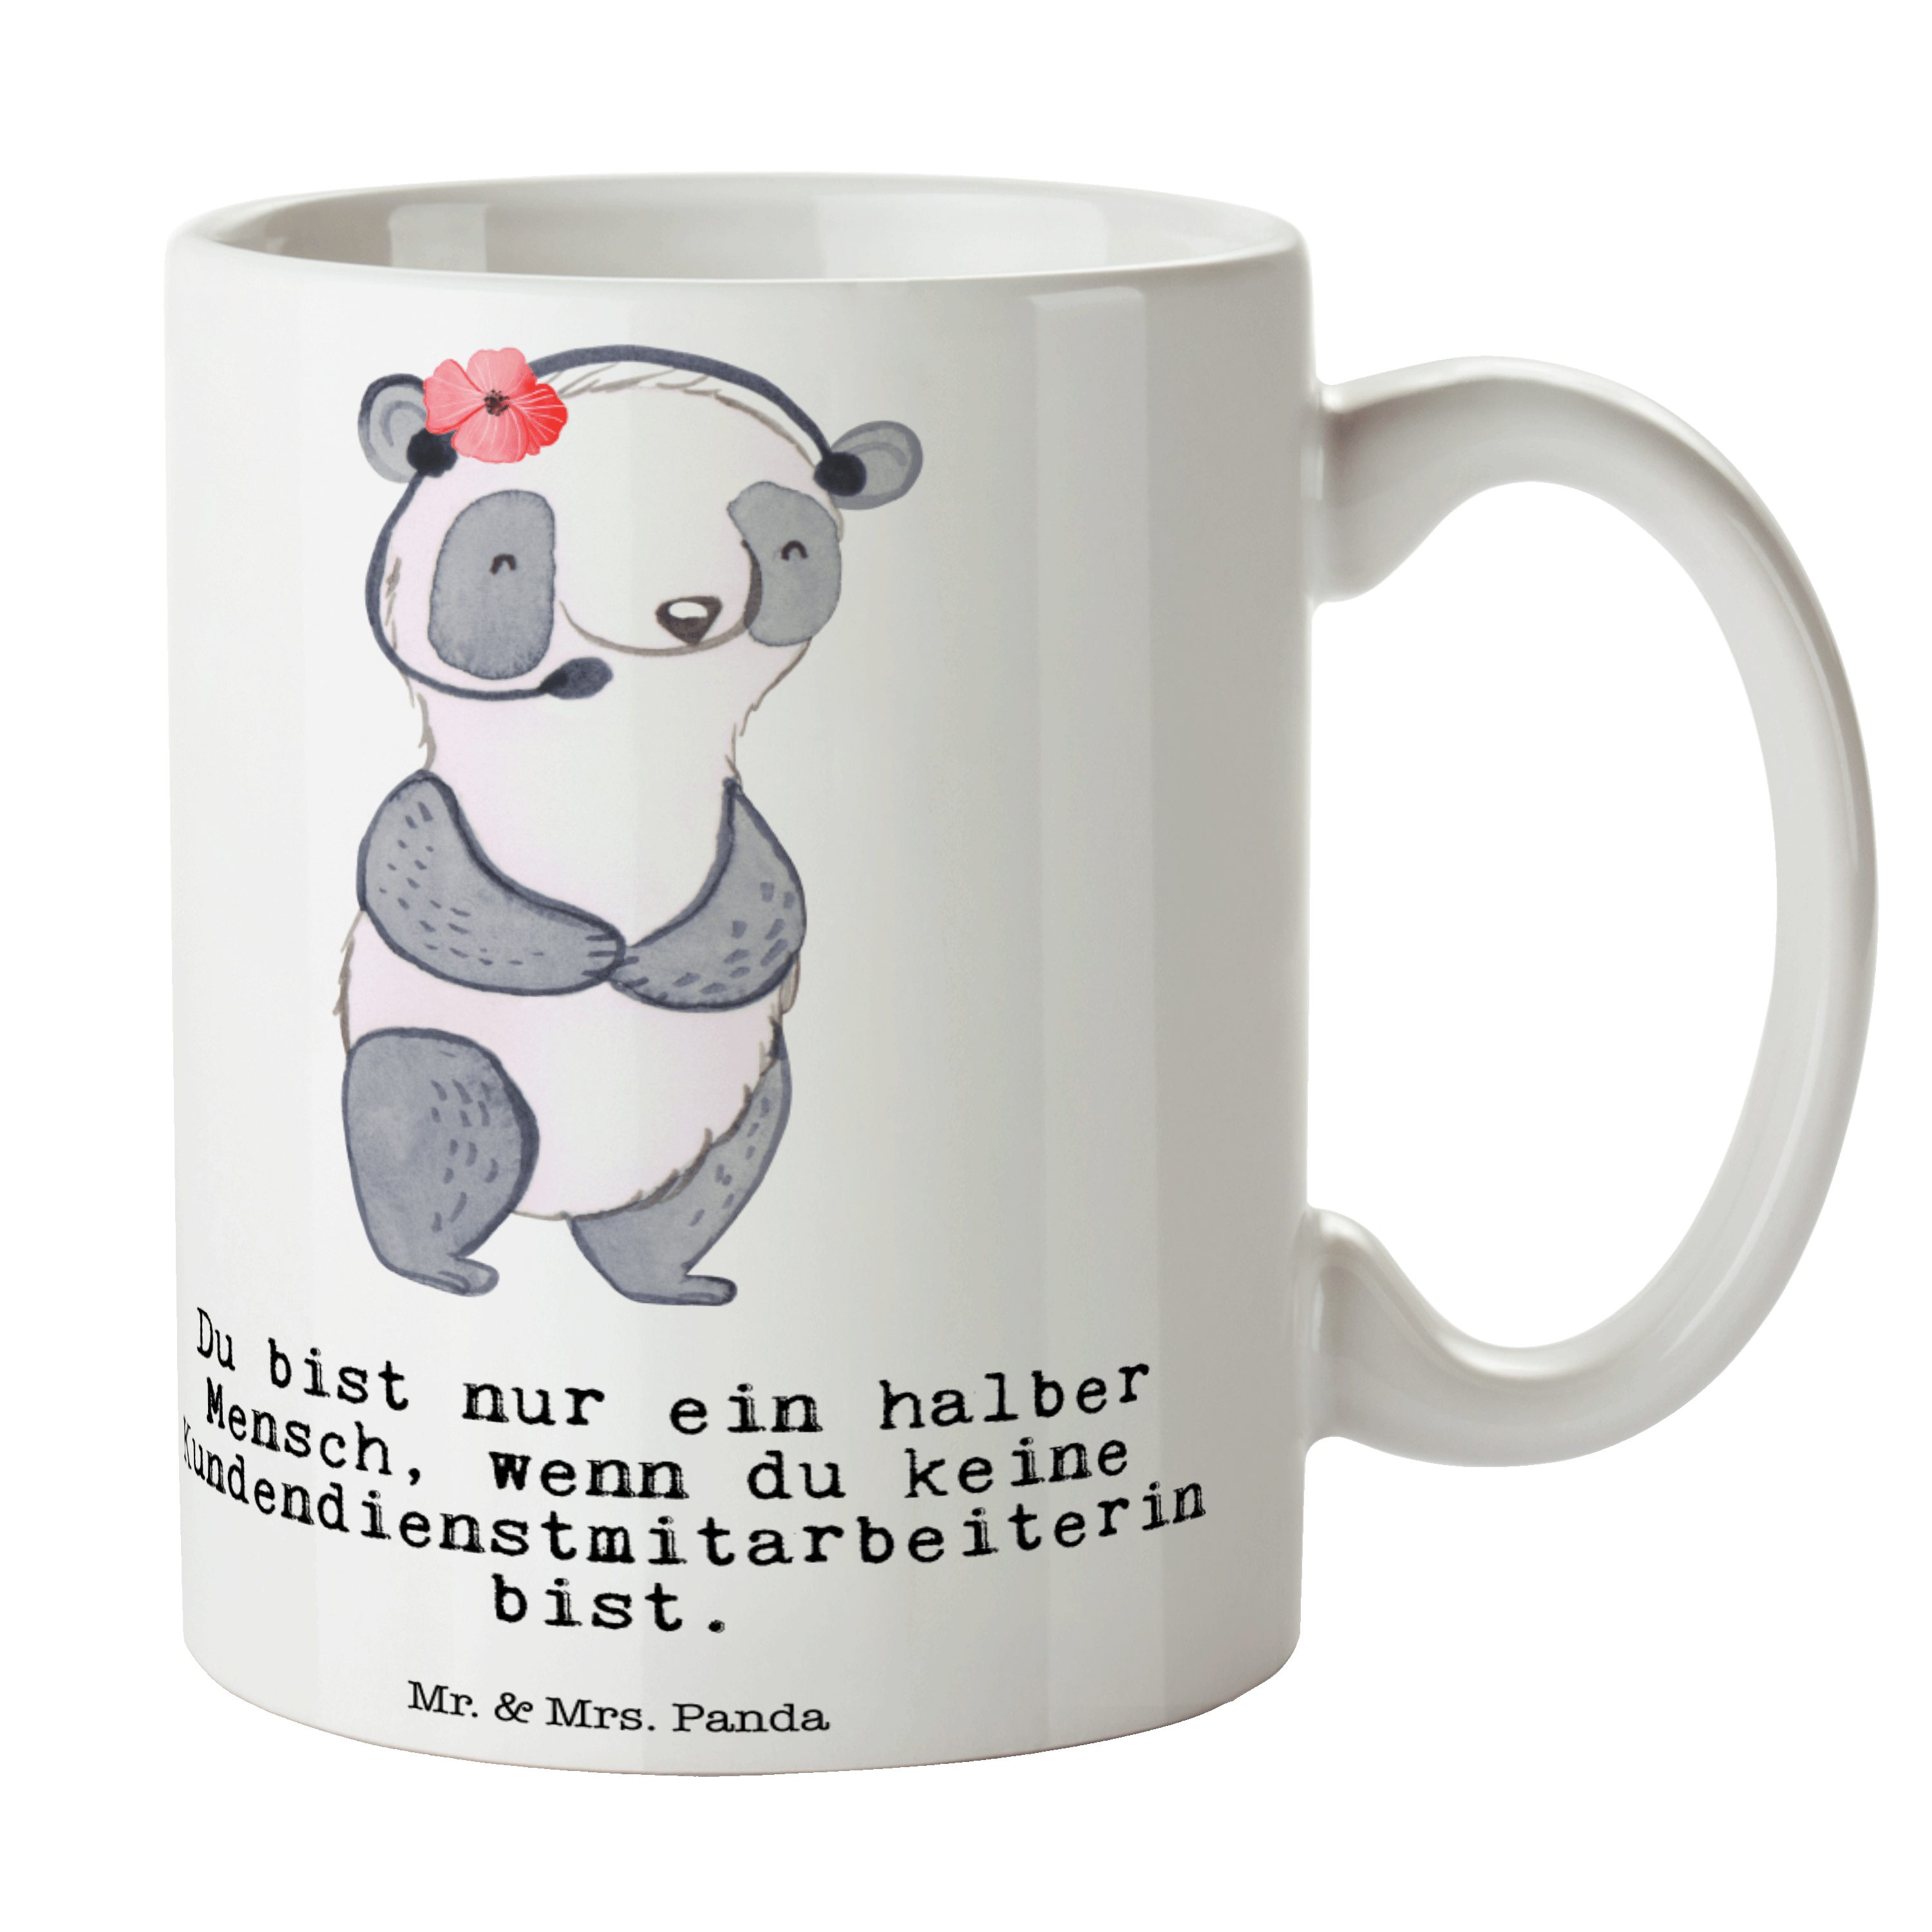 Mr. & Mrs. Panda Tasse Kundendienstmitarbeiterin mit Herz - Weiß - Geschenk, Teetasse, Keram, Keramik